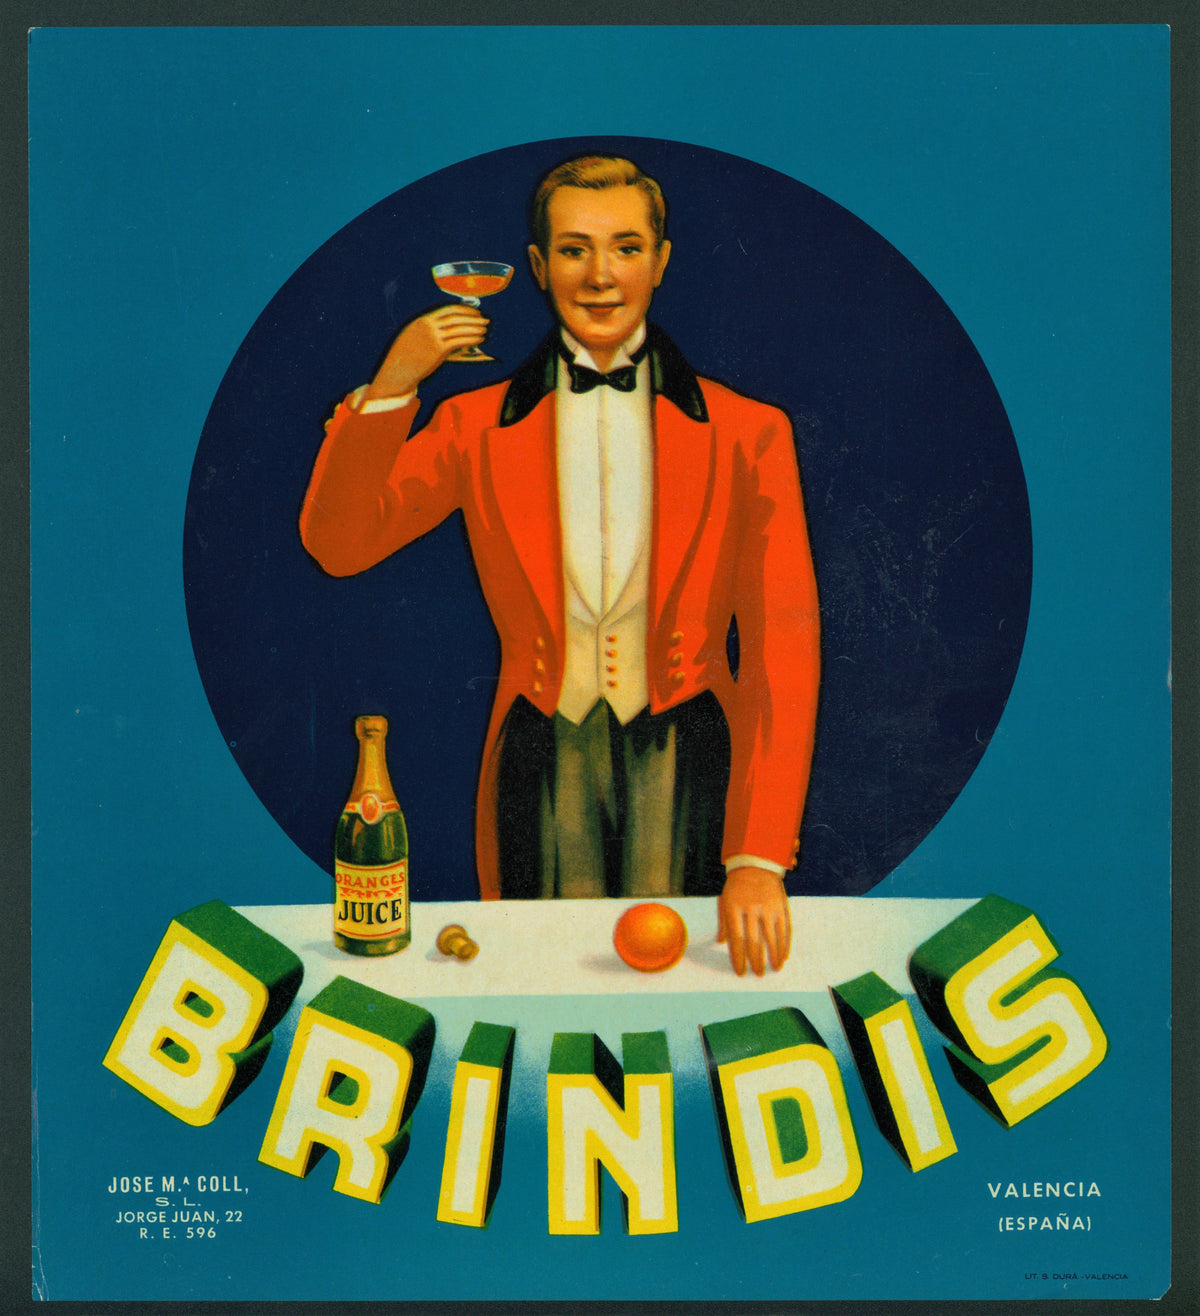 Brindis - Spanish Crate Label - Authentic Vintage Antique Print